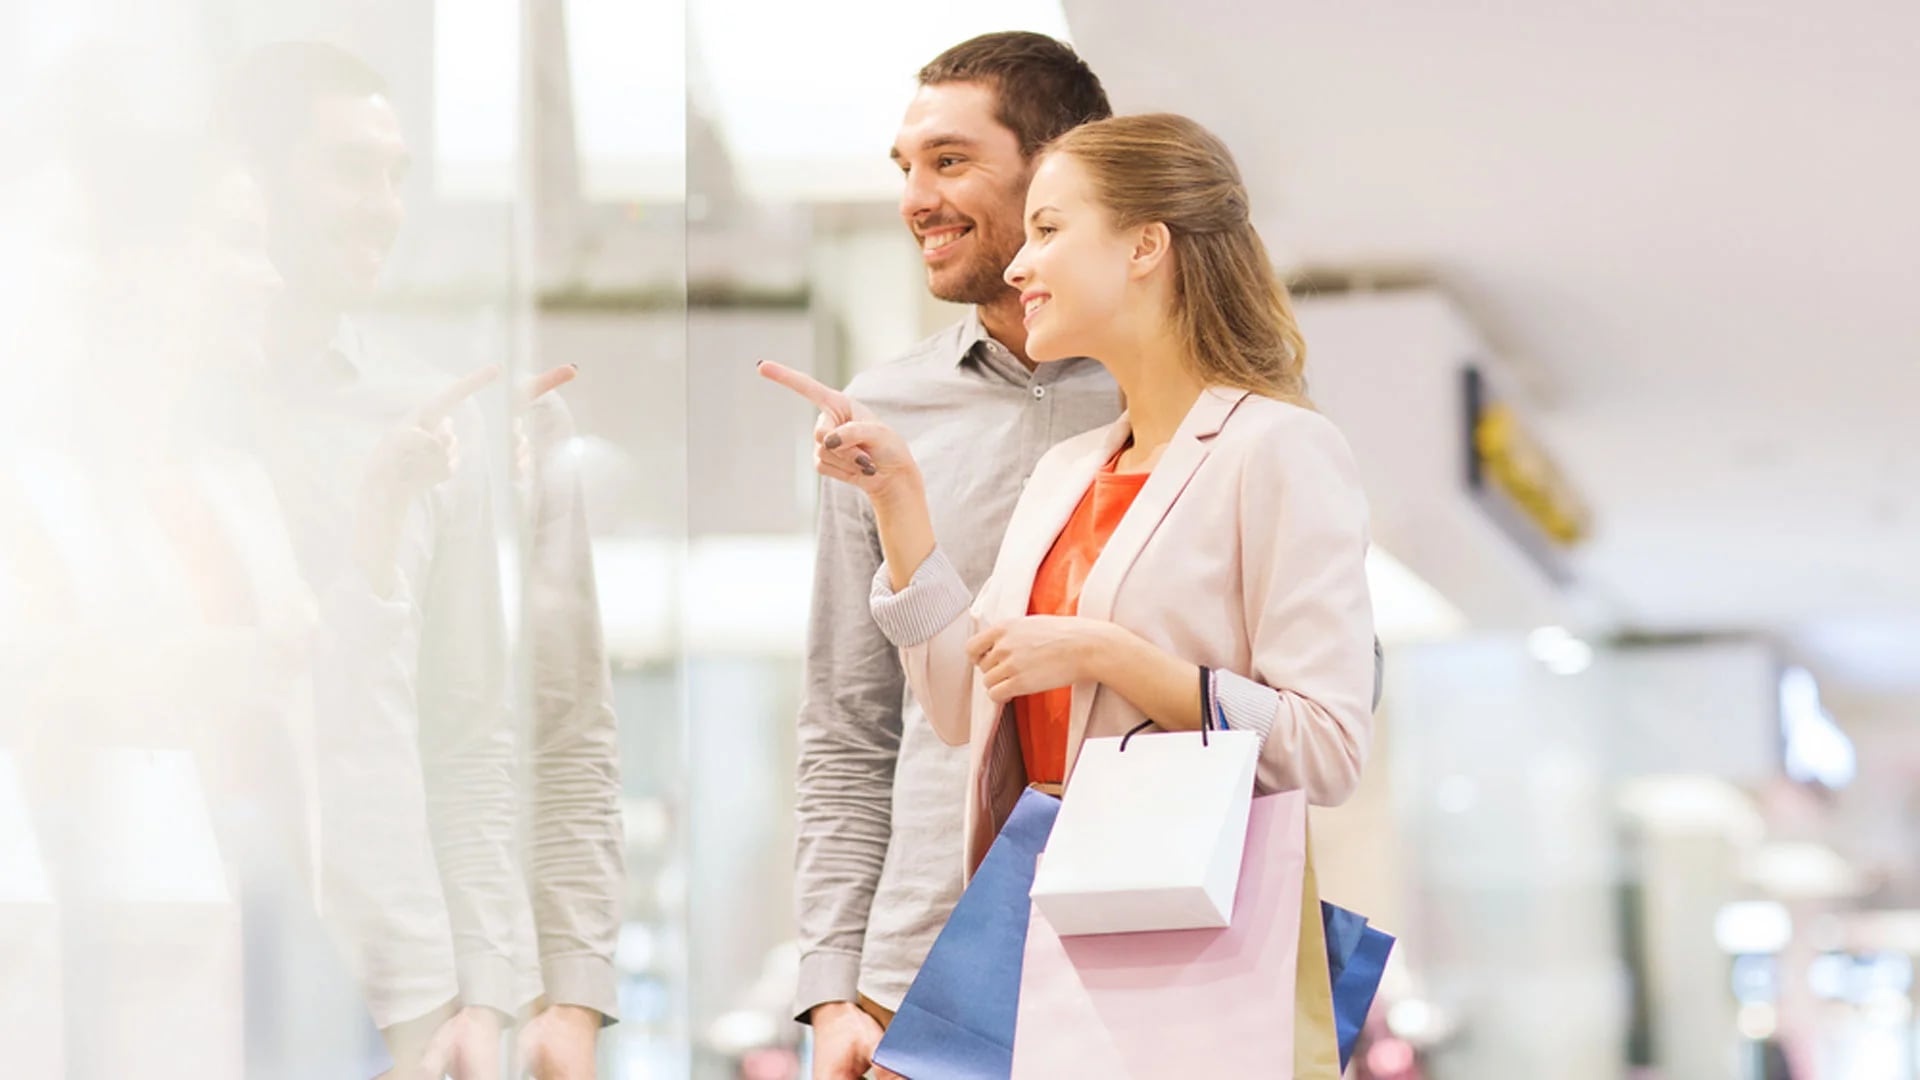 En los shoppings y comercios se registran la mayor cantidad de quejas de los consumidores (Shutterstock)